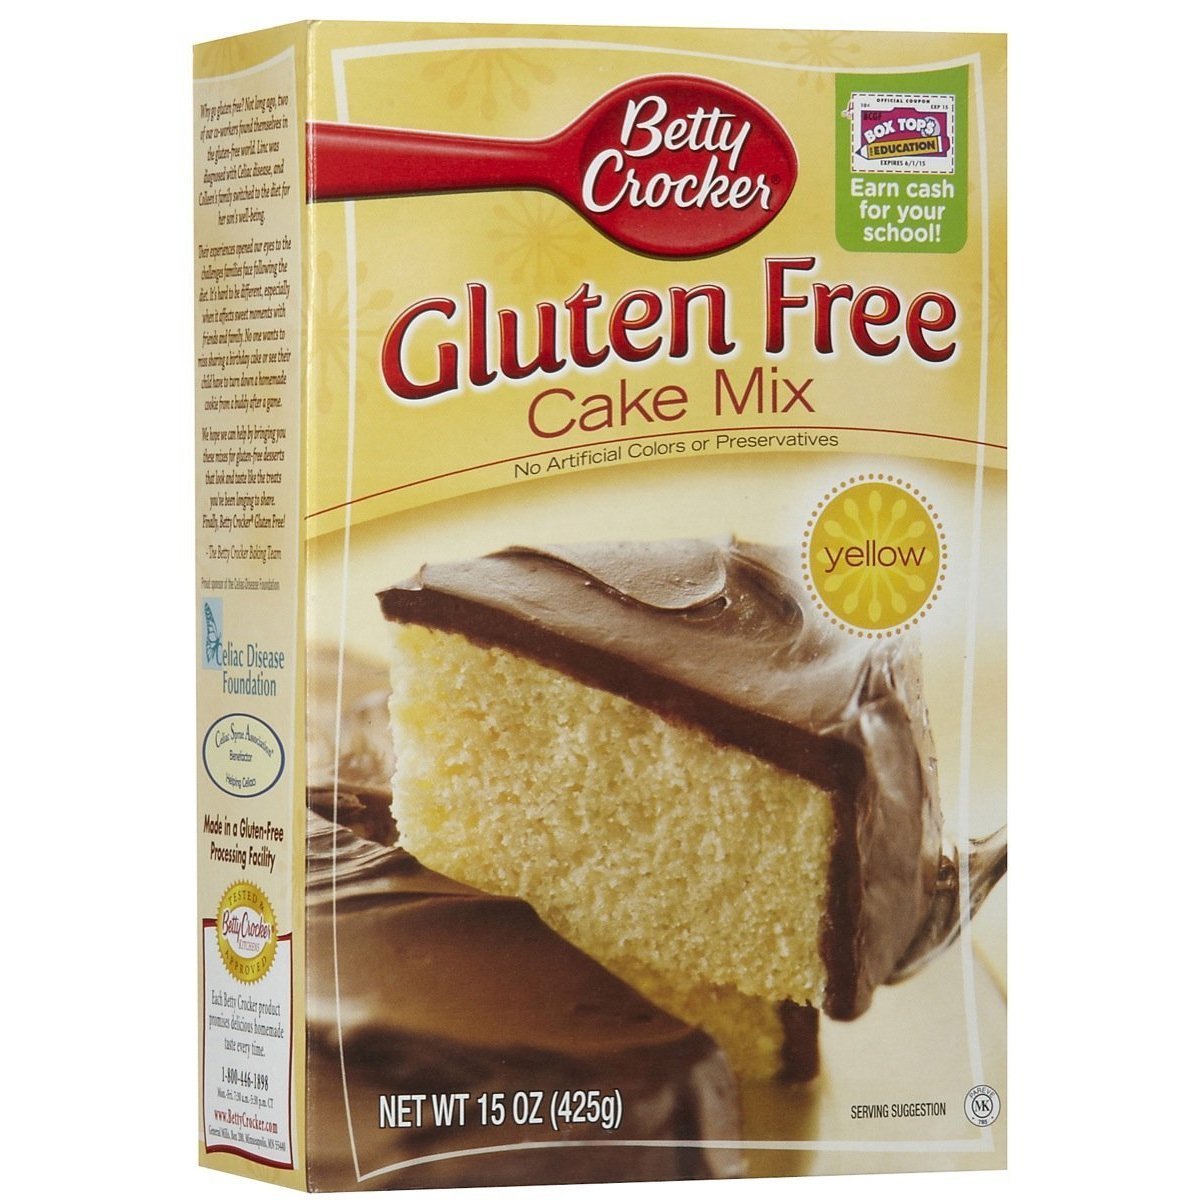 Betty Crocker, Gluten Free, Yellow Cake Mix, 15oz Box (Pack of 4)